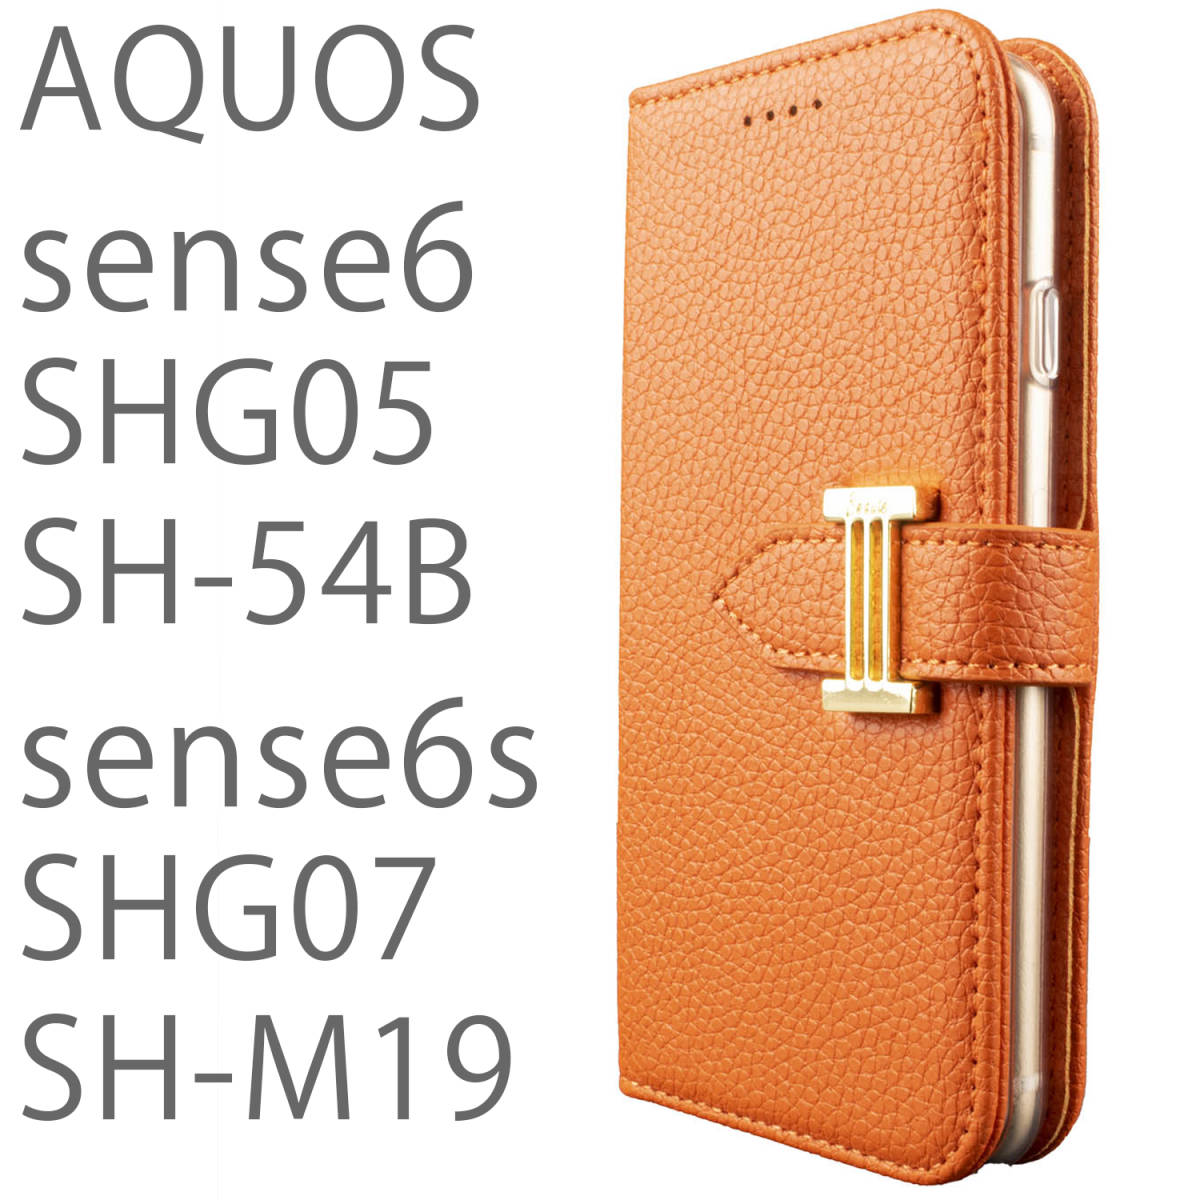 AQUOS sense6s ケース 手帳型 おしゃれ オレンジ SHG07 カバー sense6 SHG05 SH54B SHM19 カバー 鏡付 ストラップ付 シンプル 送料無料_画像1